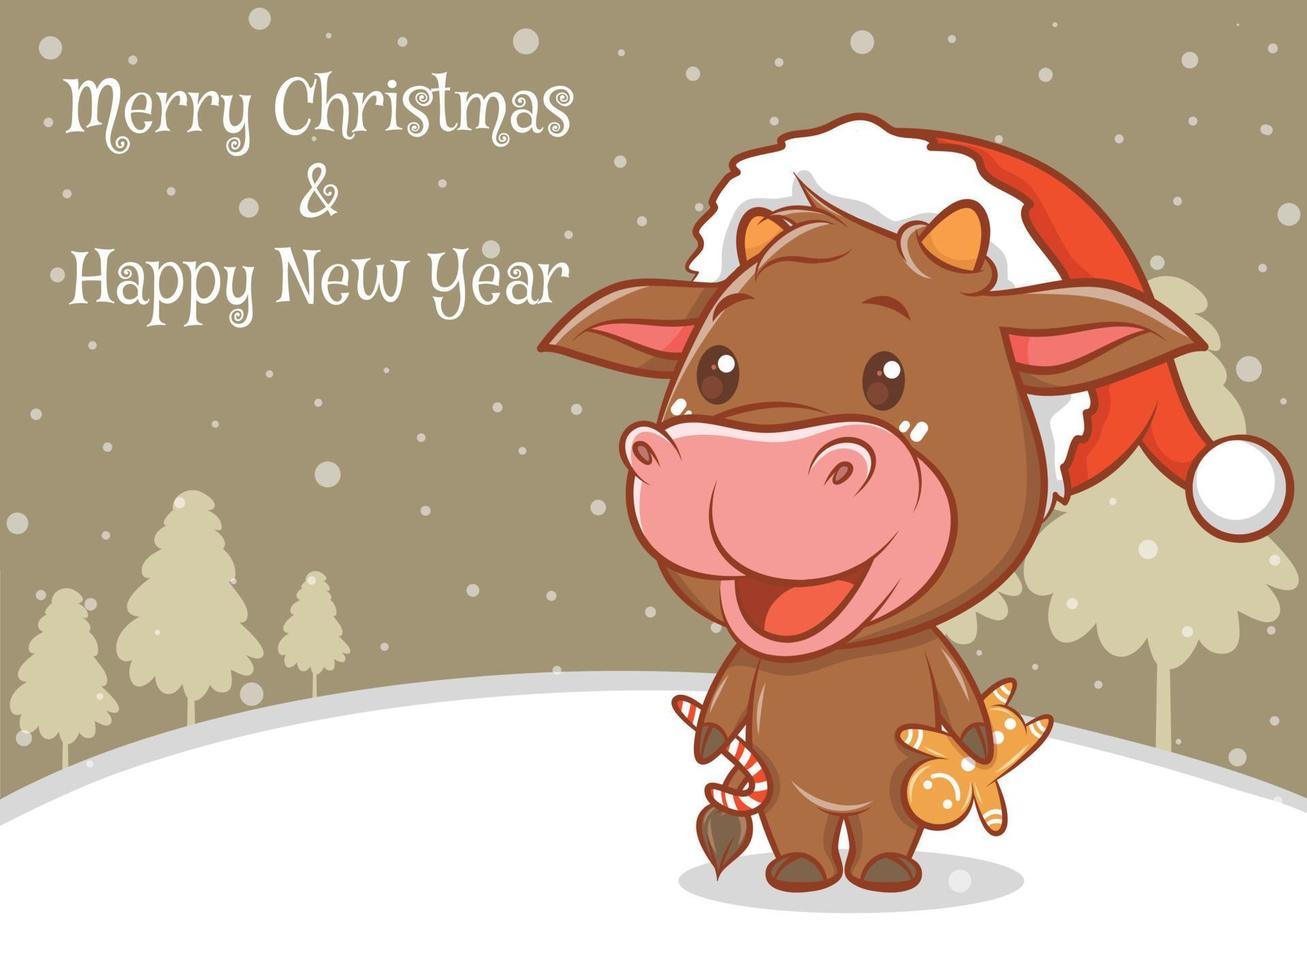 süße Kuh-Cartoon-Figur mit frohen Weihnachten und guten Rutsch ins neue Jahr Grußbanner. vektor